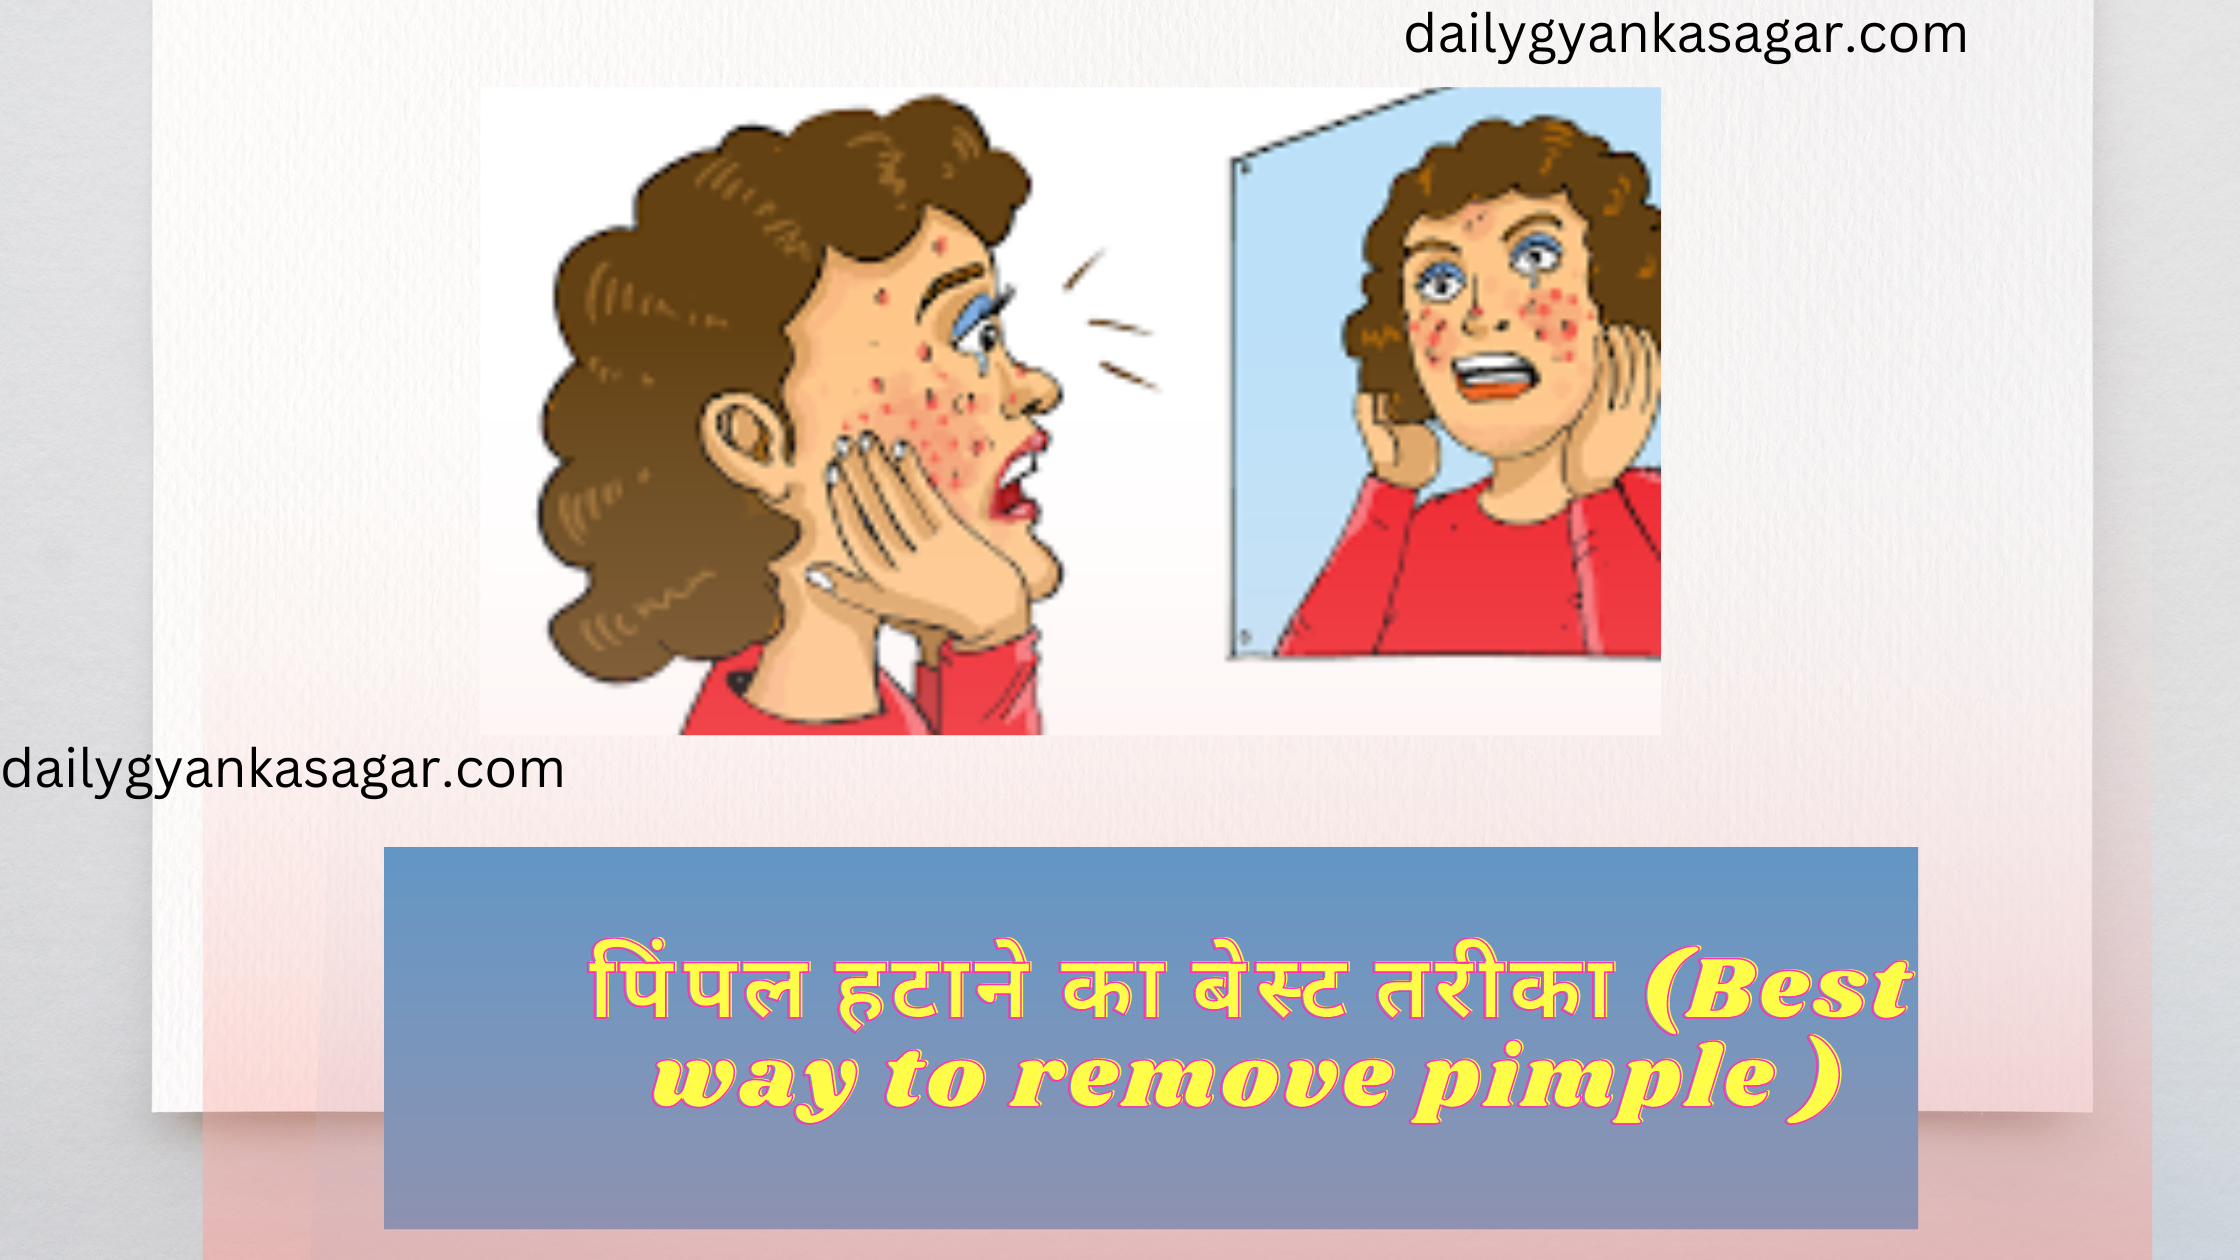 पिंपल हटाने का बेस्ट तरीका (Best way to remove pimple )